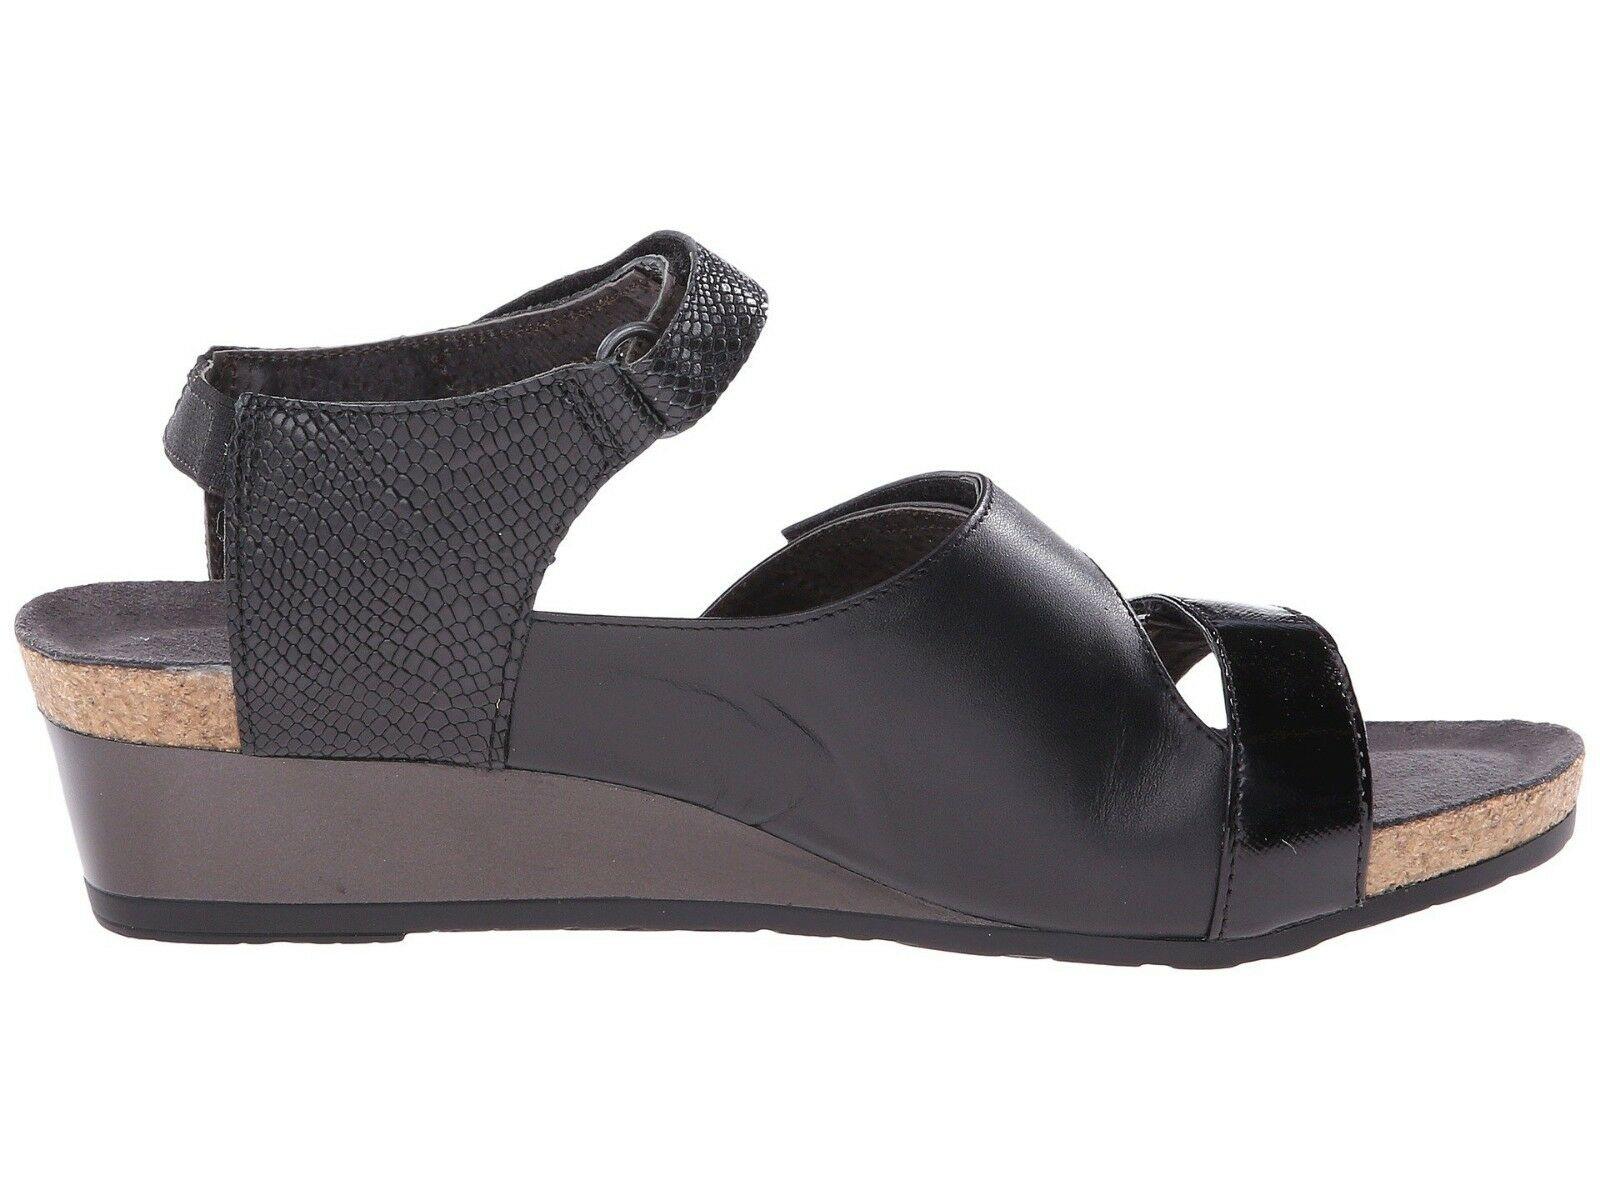 Naot Goddess Women Sandals Black Leather Shoes Wedge Platform Size EUR  42 - SVNYFancy